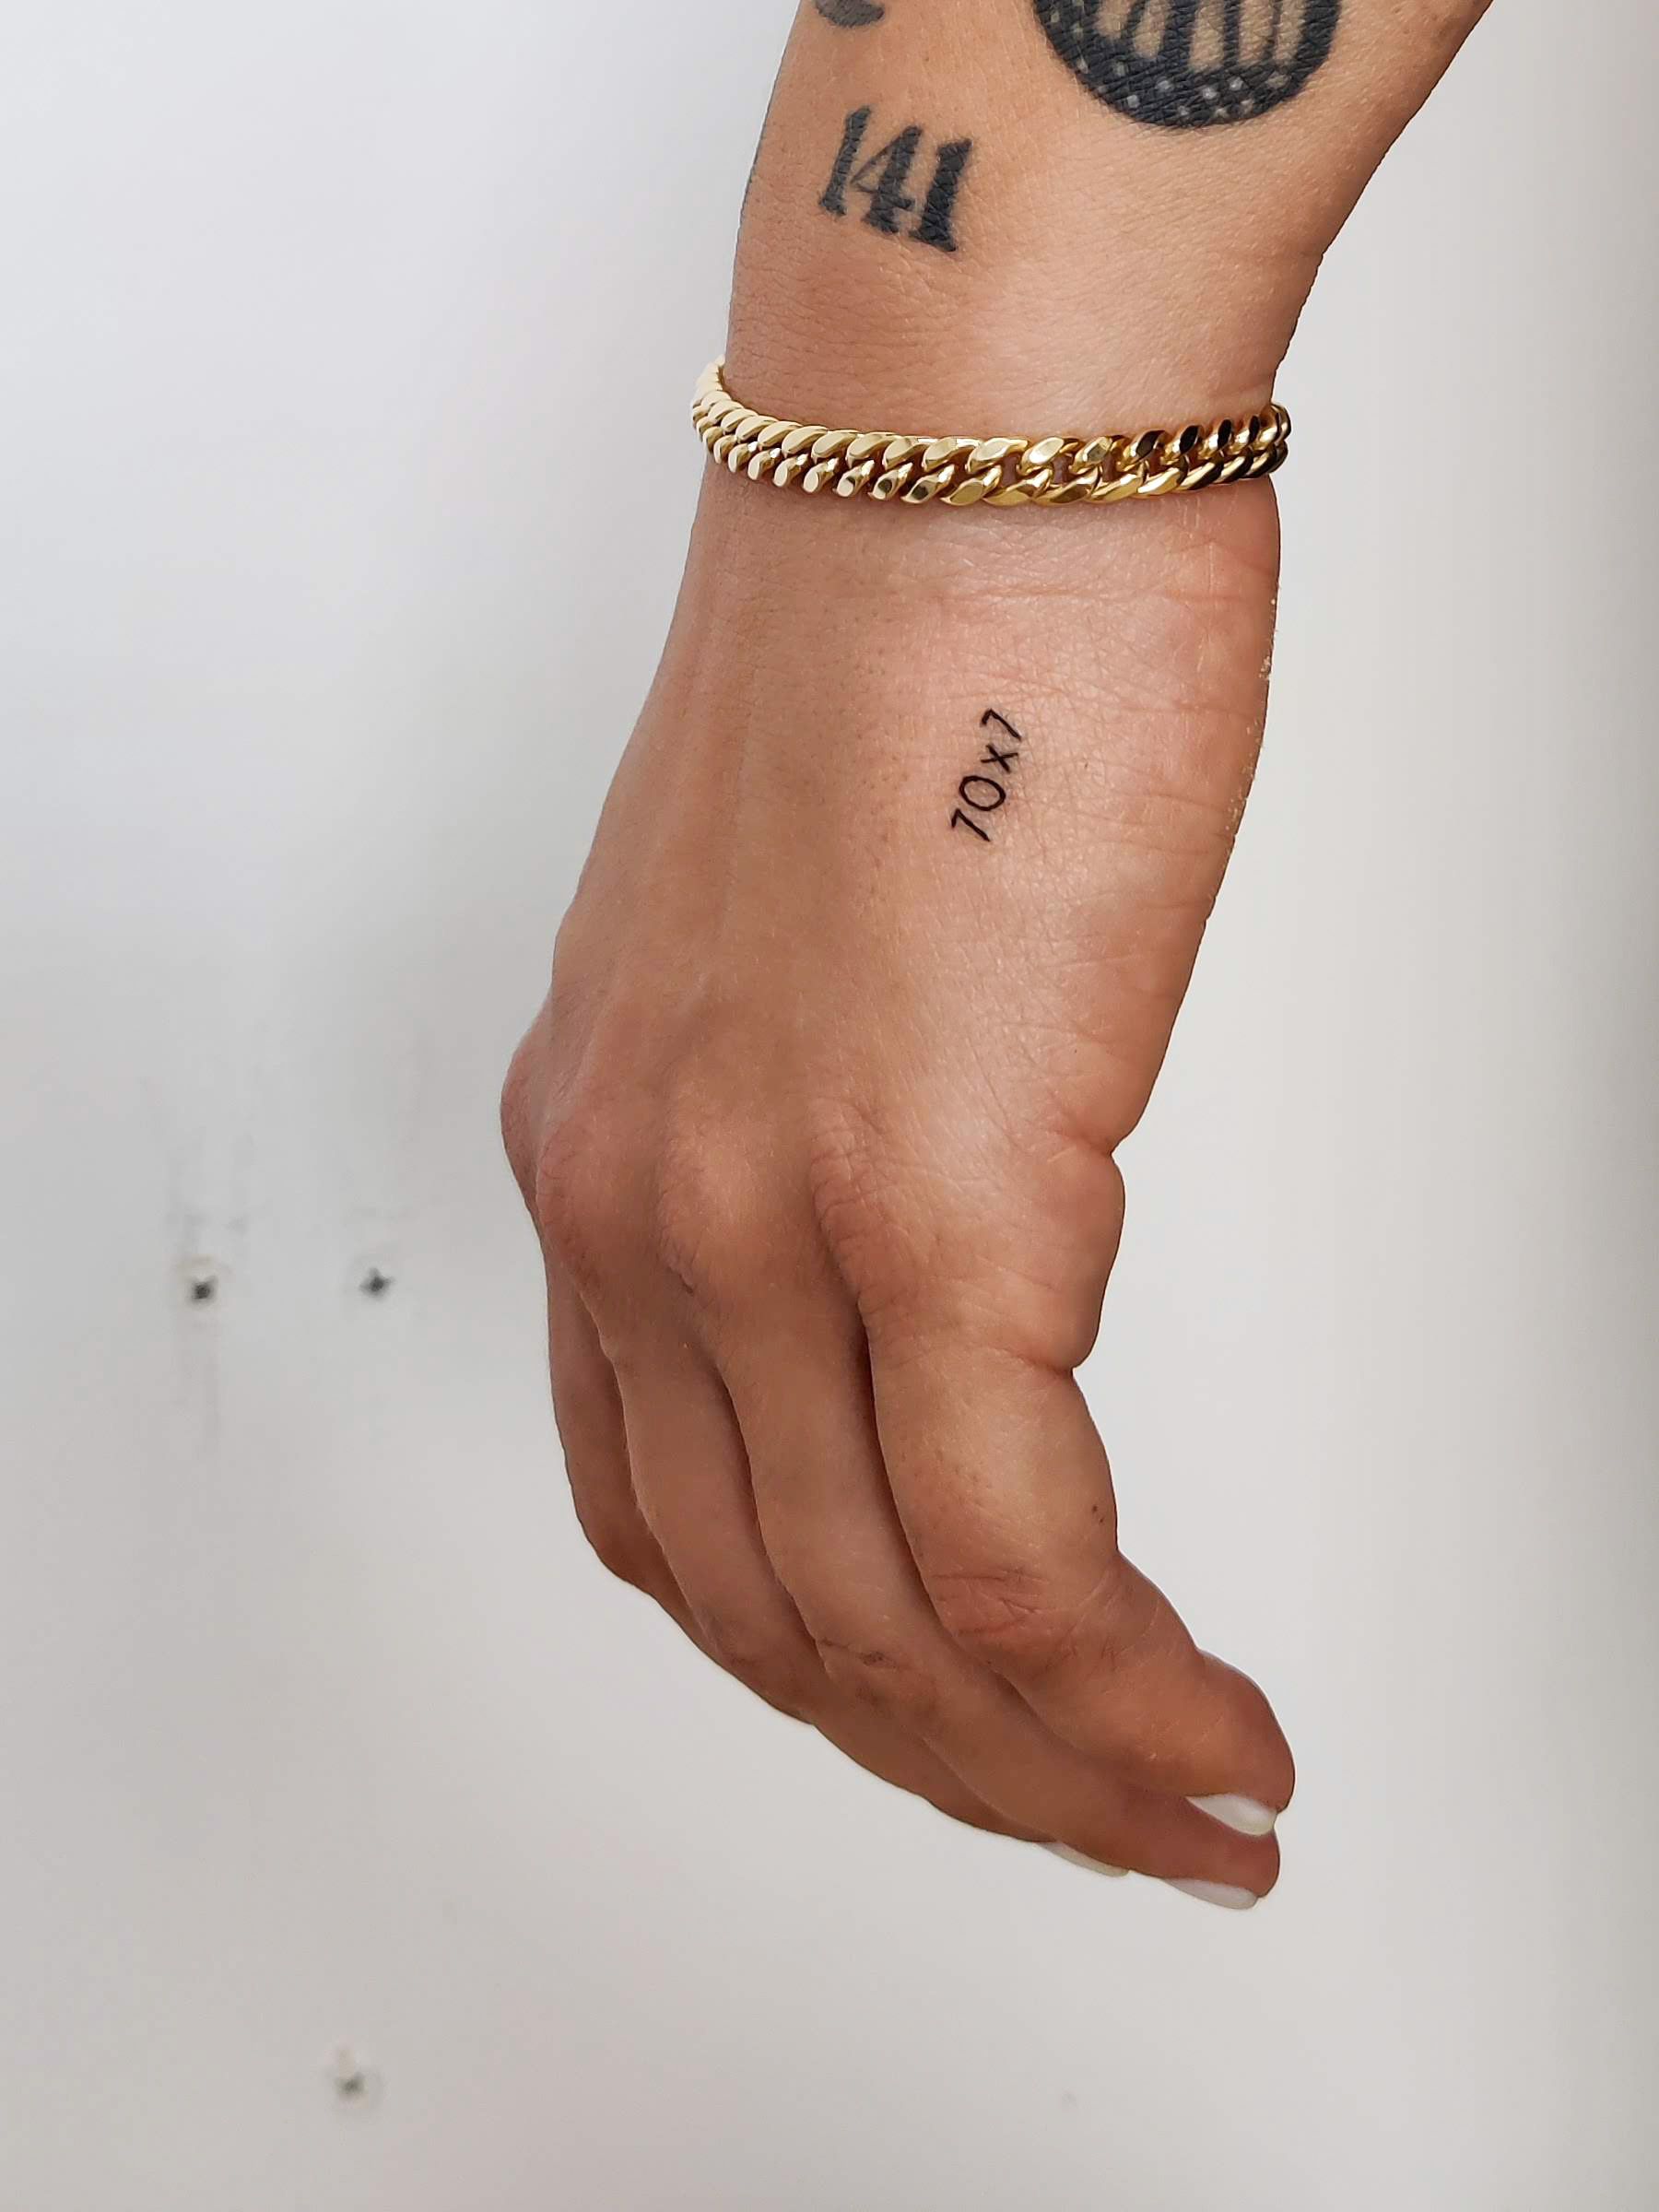 Forgiven Wrist Tattoo - Small Palm Tattoos